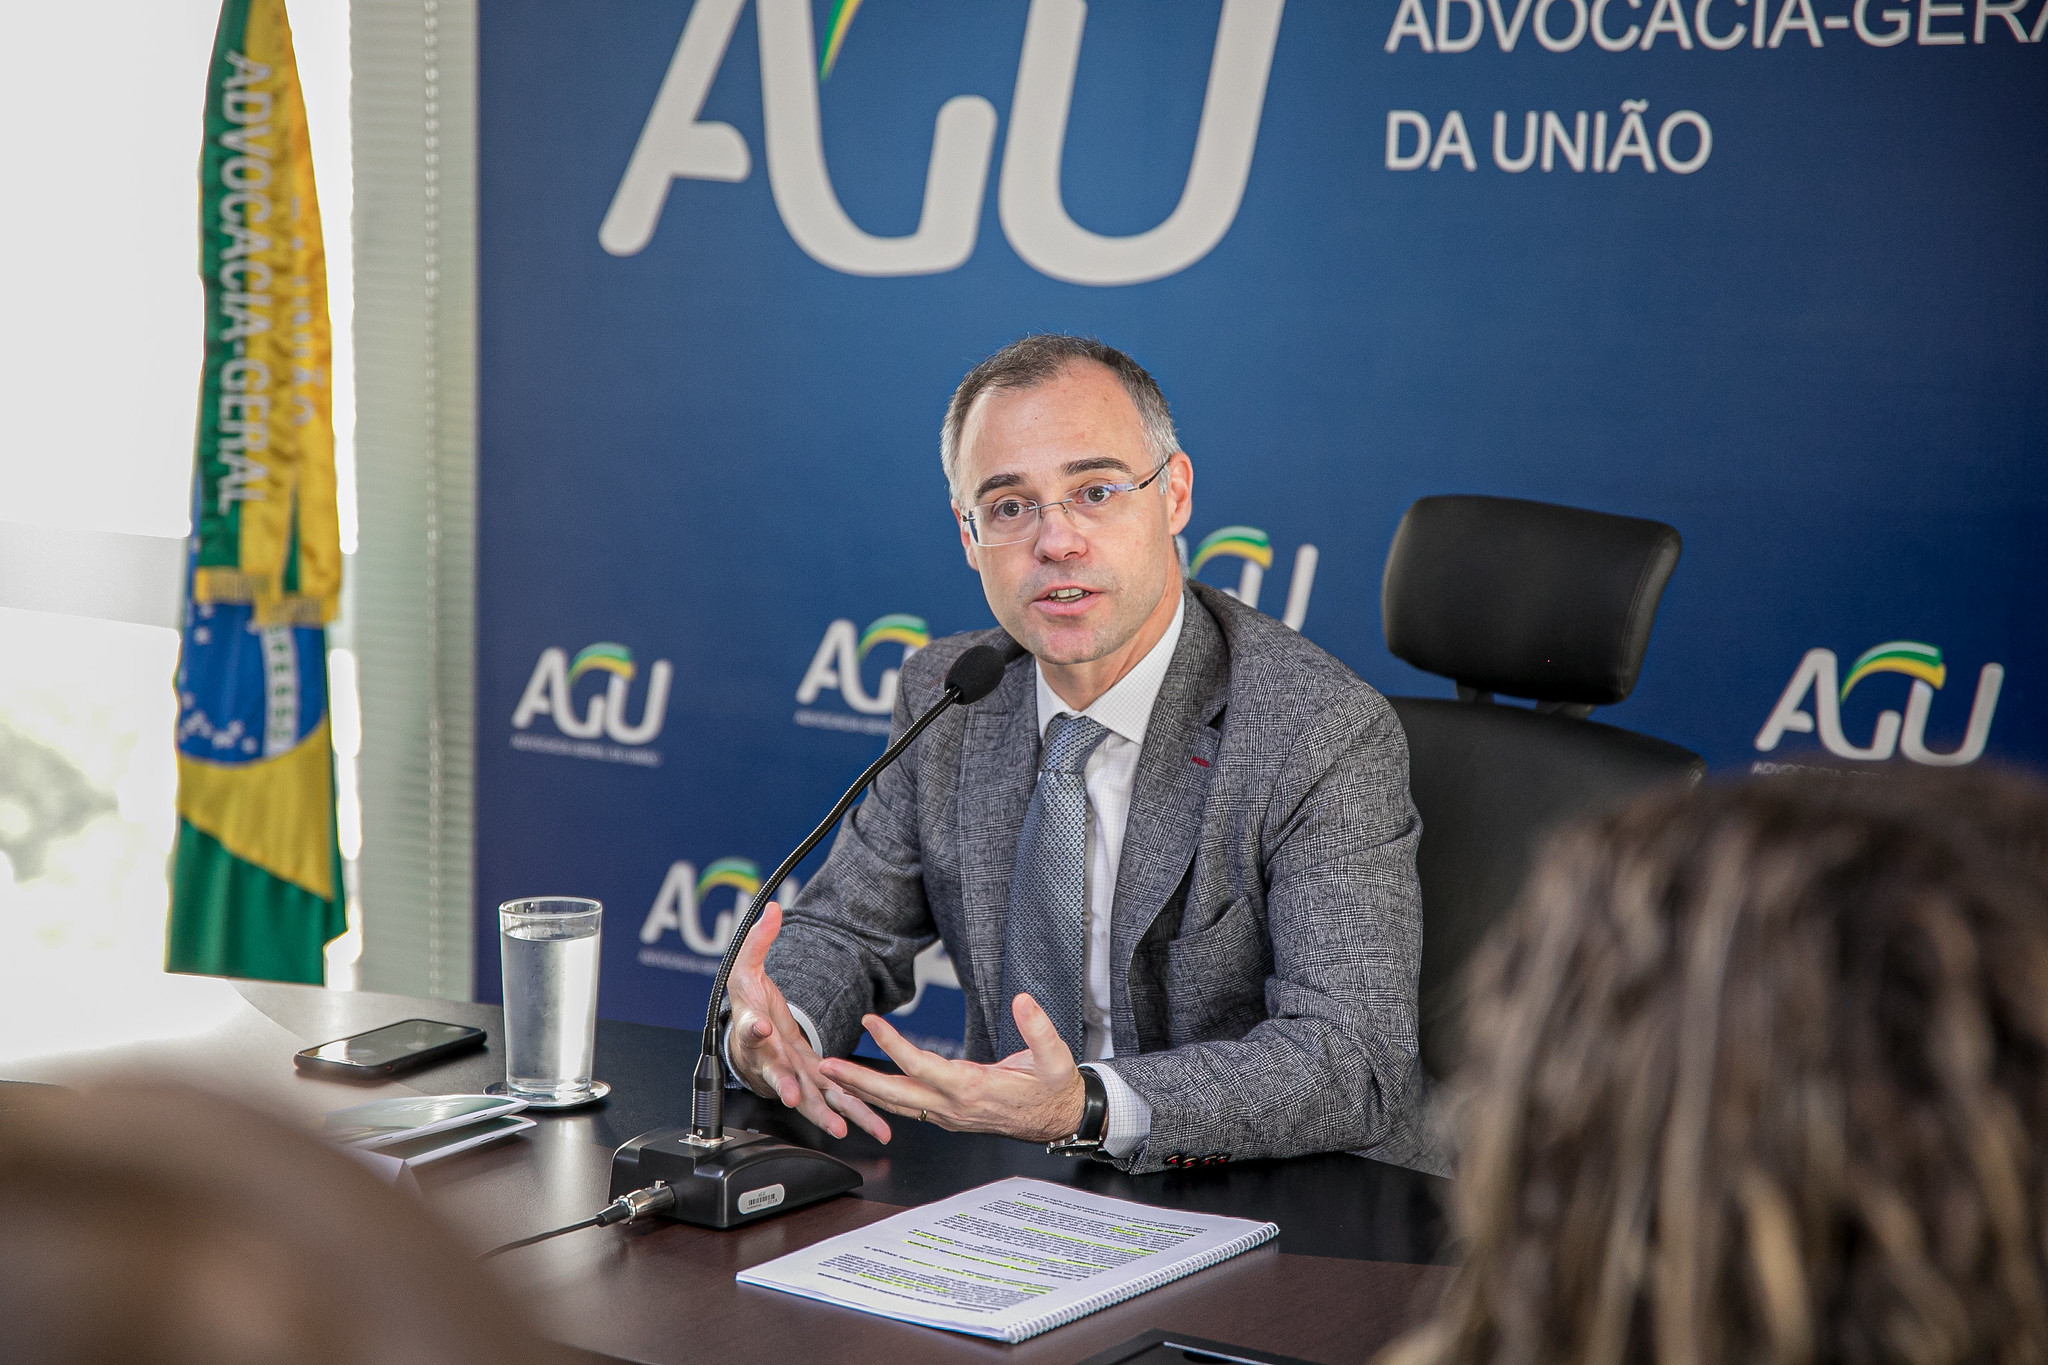 André Mendonça ocupou a chefia da Advocacia-Geral da União antes de ser nomeado para o Ministério da Justiça